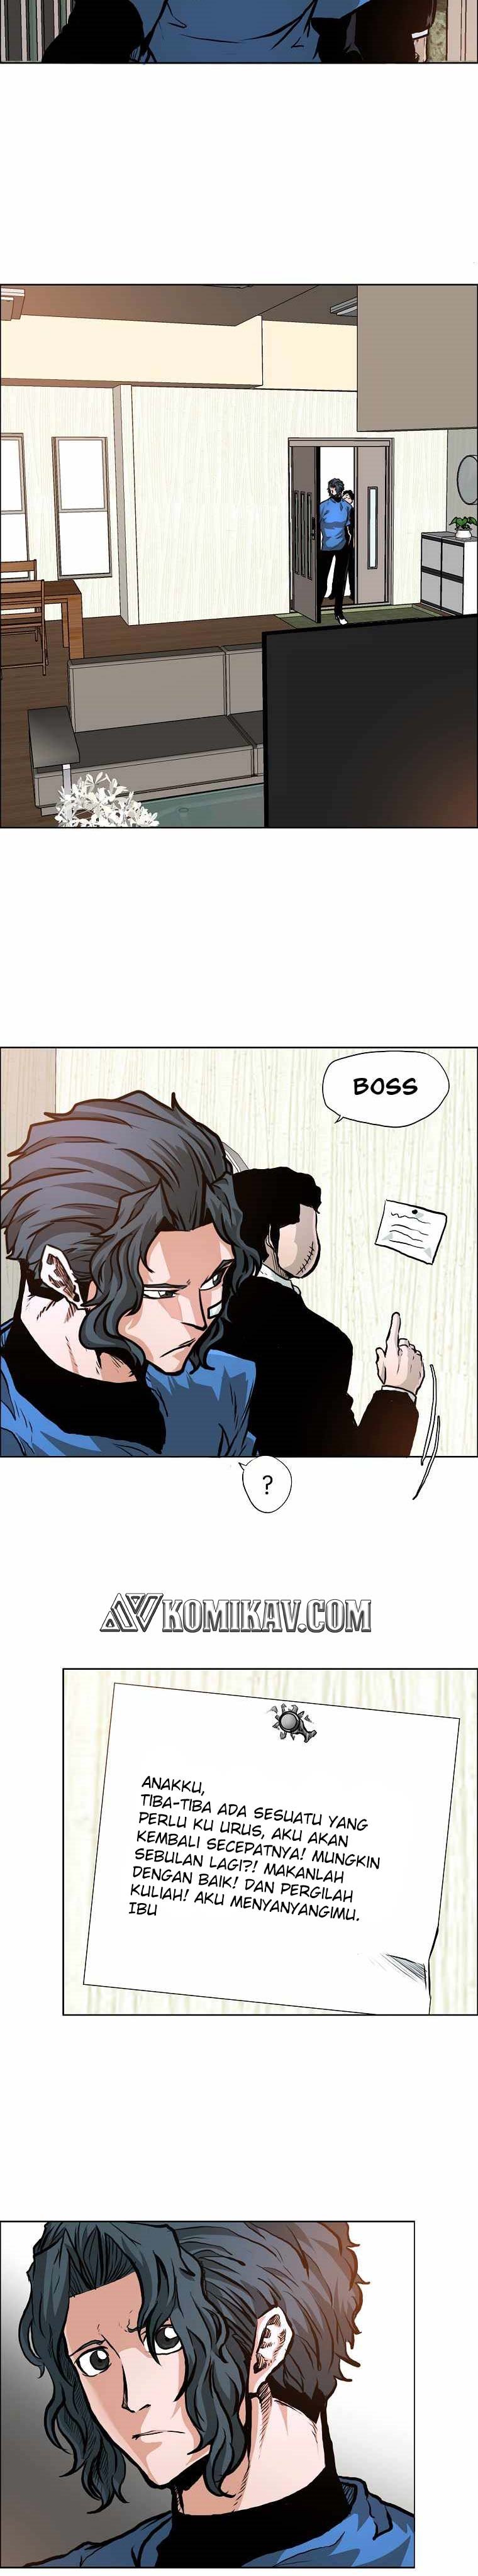 Boss in School Chapter 164